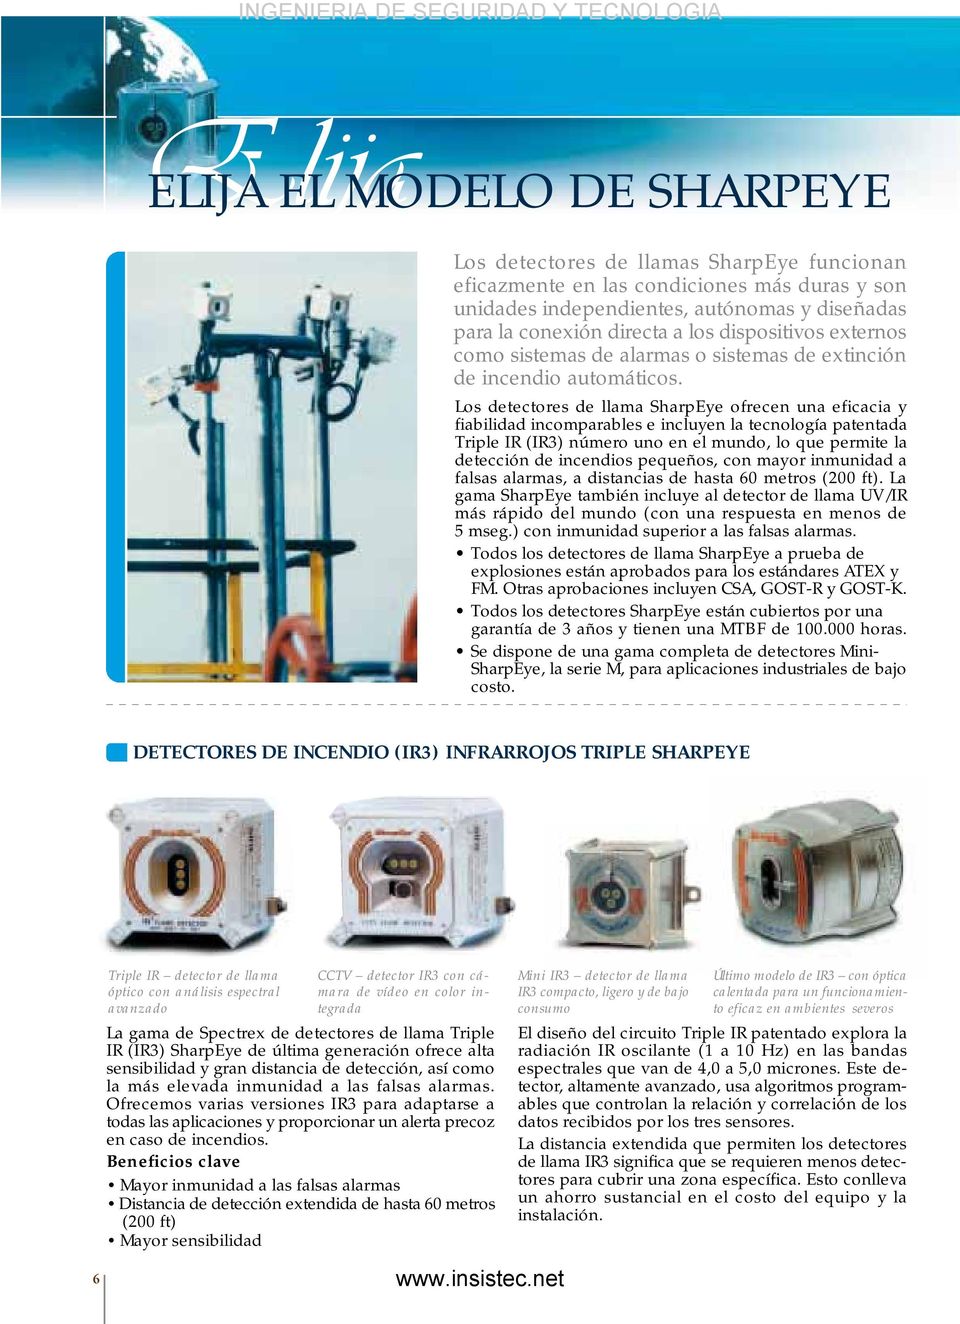 Los detectores de llama SharpEye ofrecen una eficacia y fiabilidad incomparables e incluyen la tecnología patentada Triple IR (IR3) número uno en el mundo, lo que permite la detección de incendios